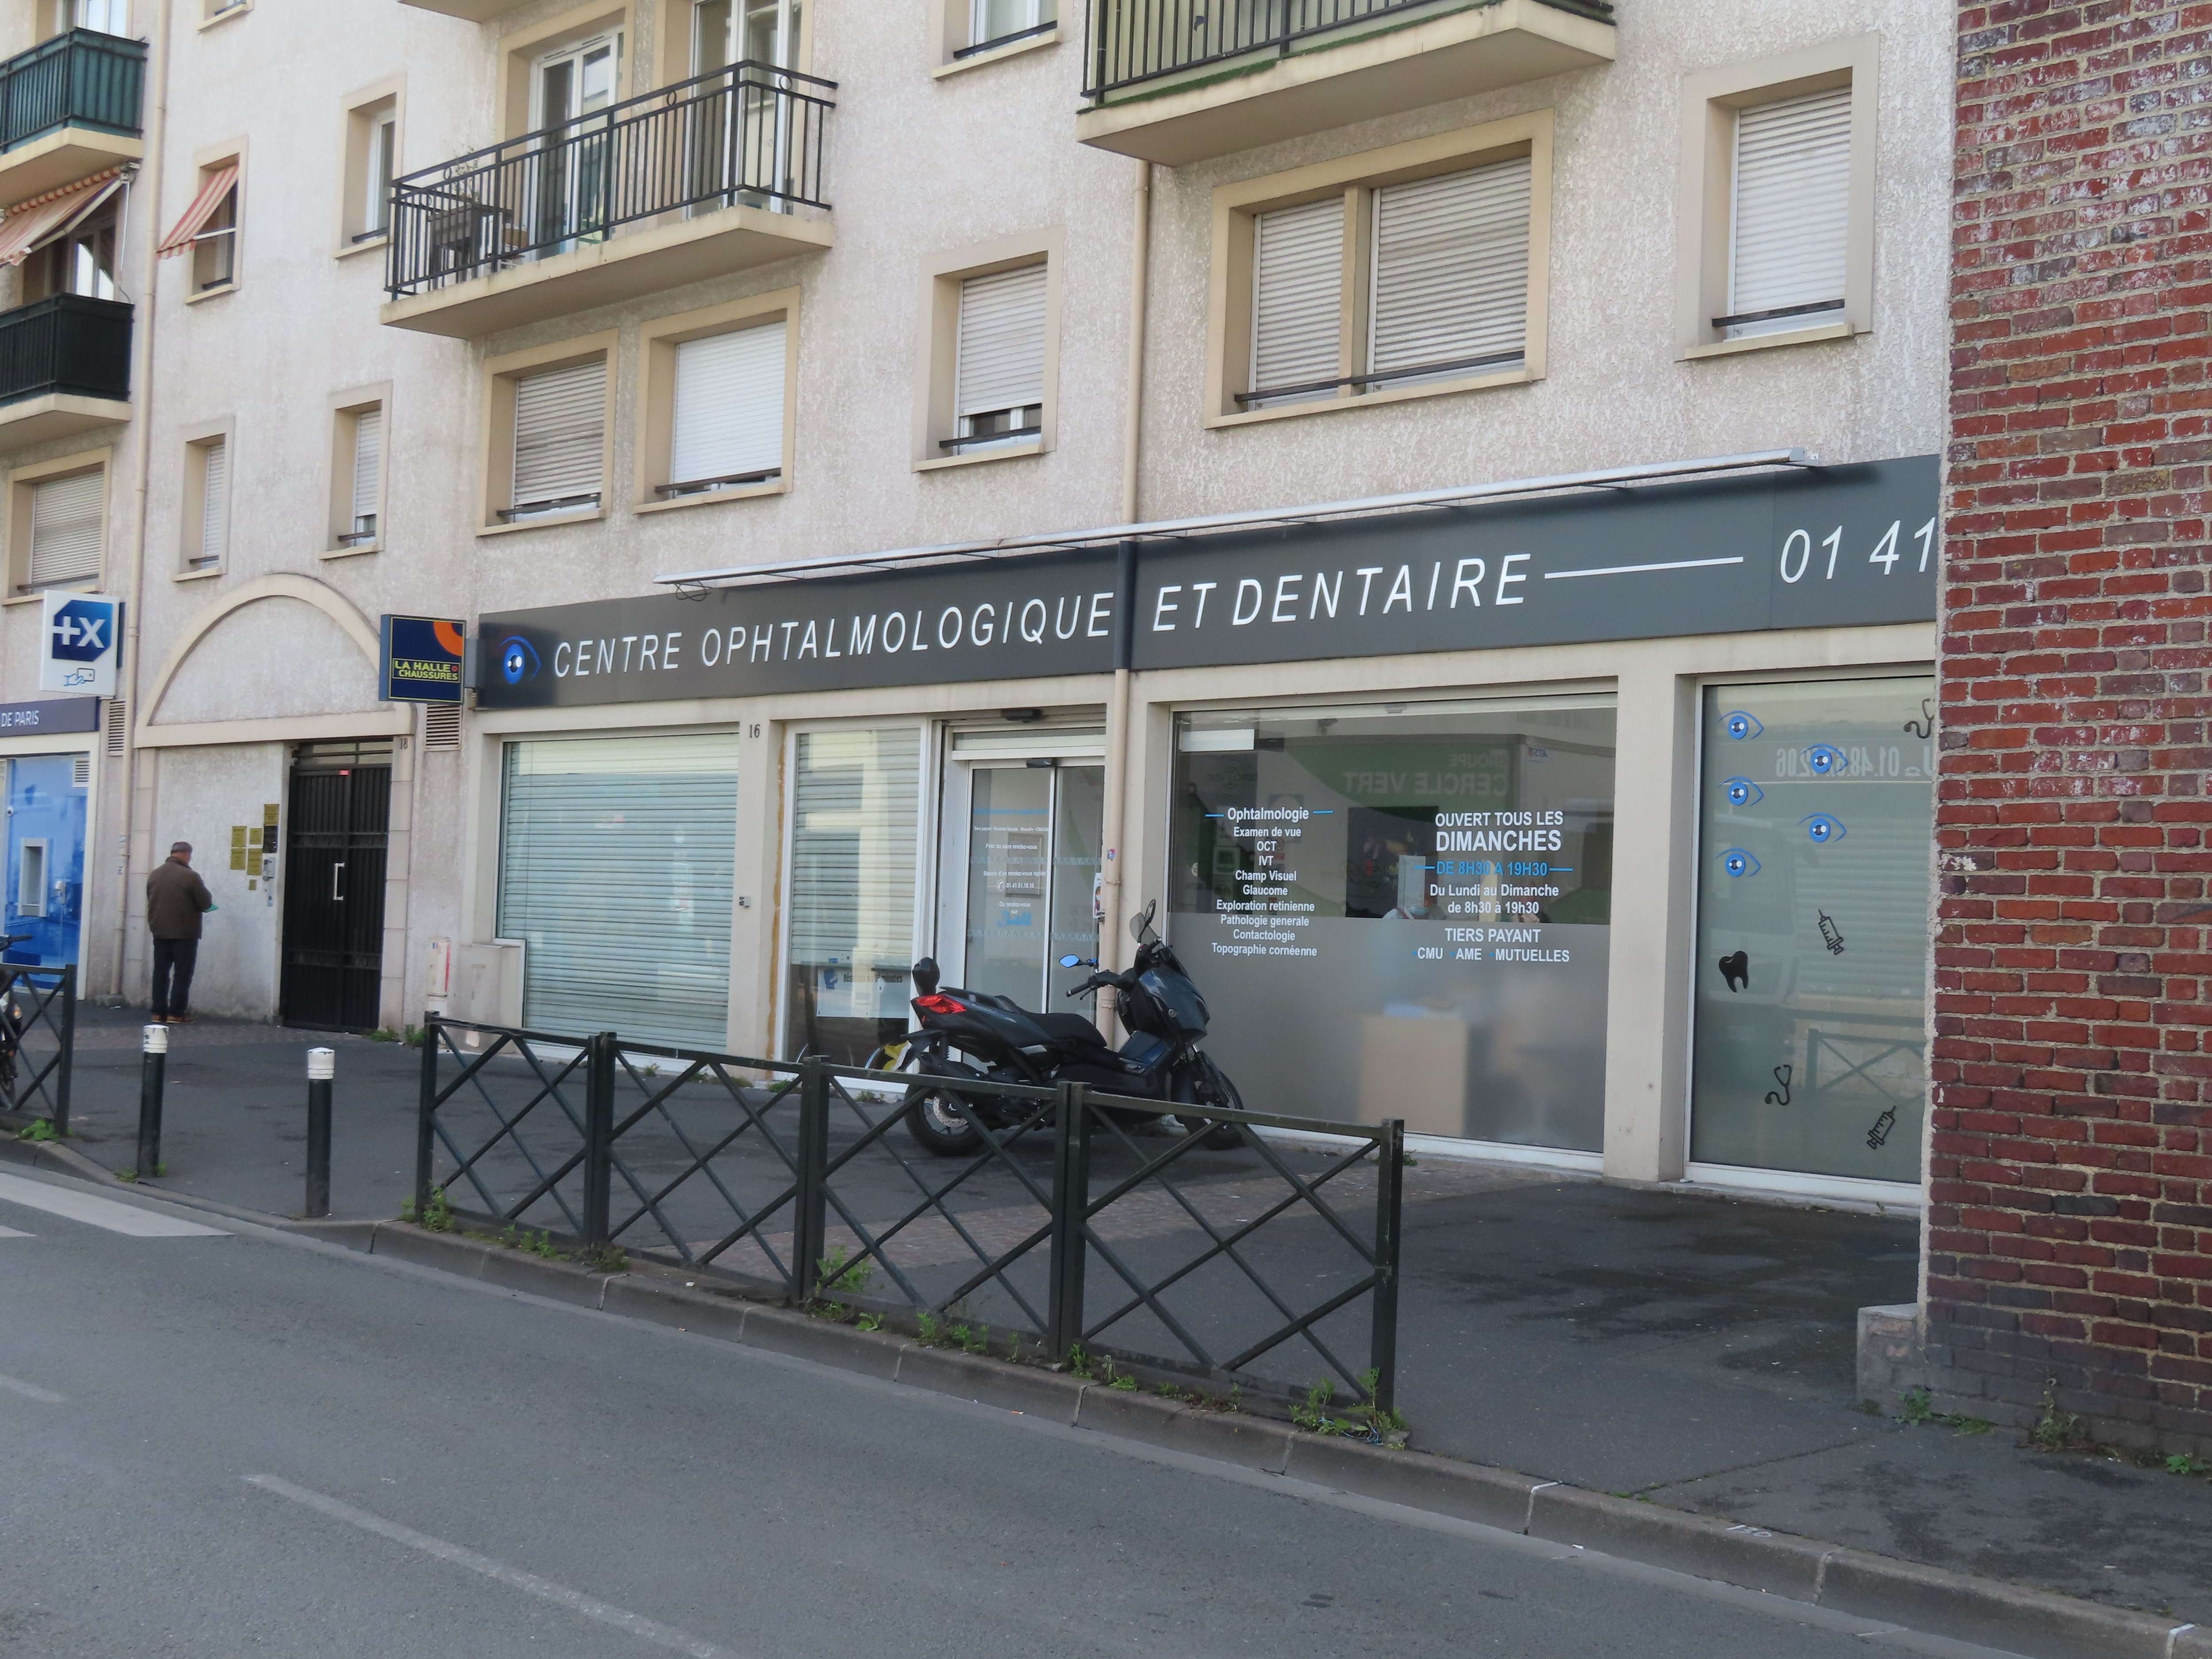 Le médecin du centre ophtalmologique du Blanc-Mesnil (Seine-Saint-Denis) est soupçonné de «pratiques douteuses» après des signalements de patients et d'opticiens. LP/Alexandre Arlot